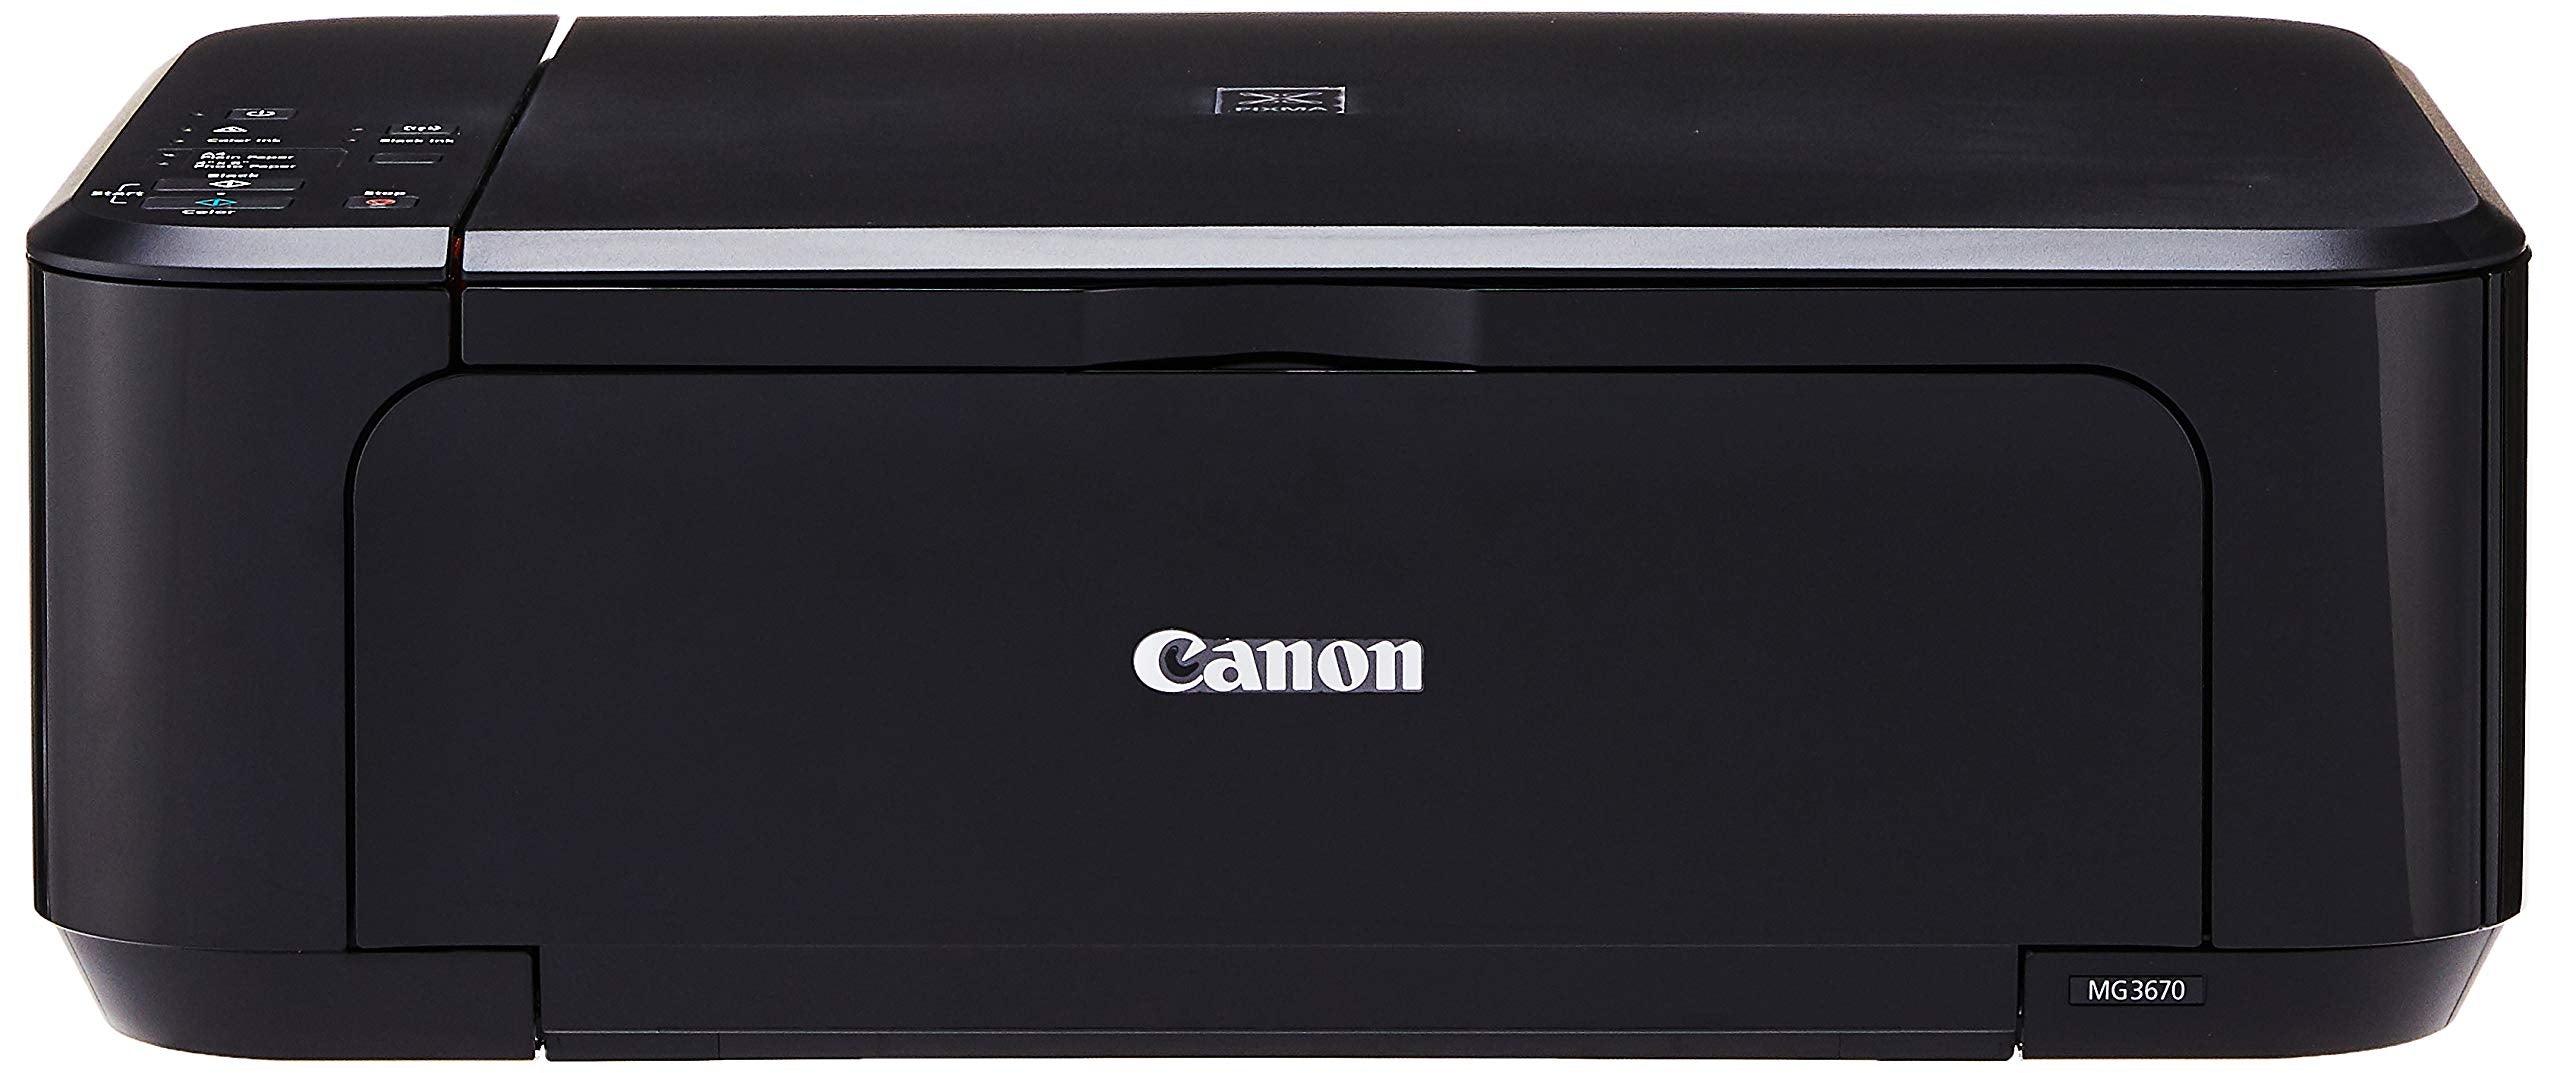 CANON Pixma MG3670 Printer - CANON, FEATURED, GIT, PRINTER, SALE